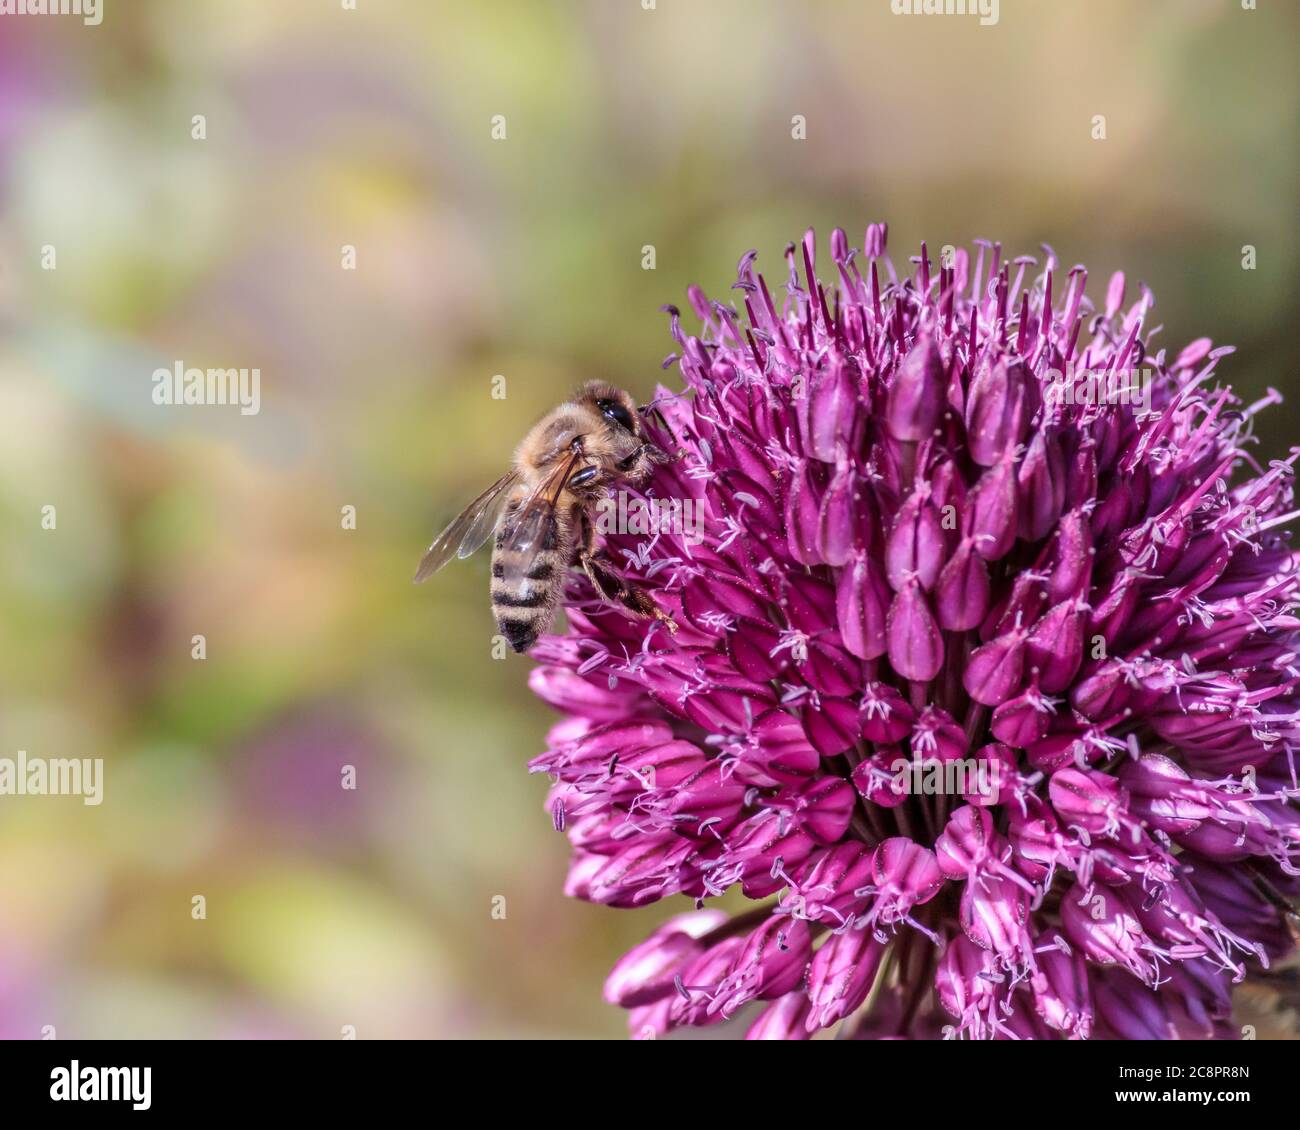 Eine Ansicht auf Augenhöhe, von der Seite, einer haarigen Honigbiene mit ihren segmentierten Beinen, die Nektar aus einer leuchtend violetten Allium sphaerocephalon Blume sammelt. Stockfoto